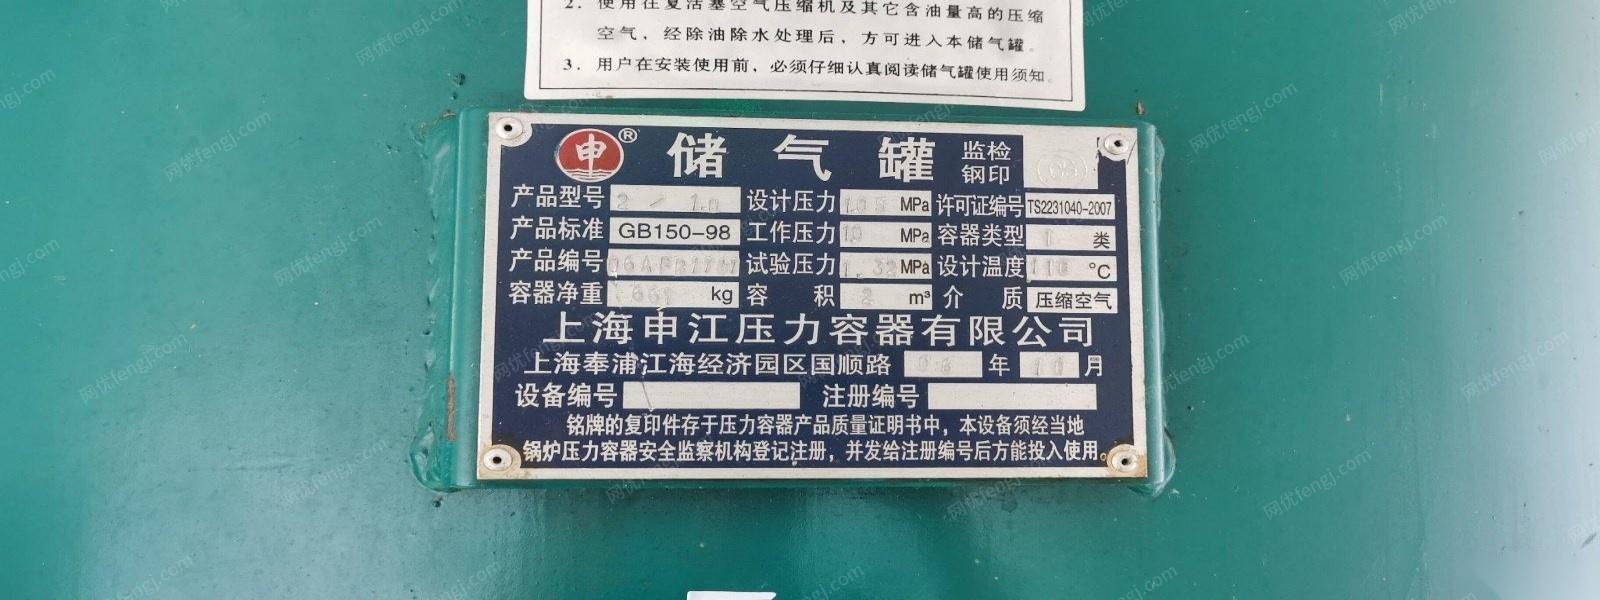 上海闵行区特价处理全套阿特拉斯空压机、干燥机、申江储气罐 10000元